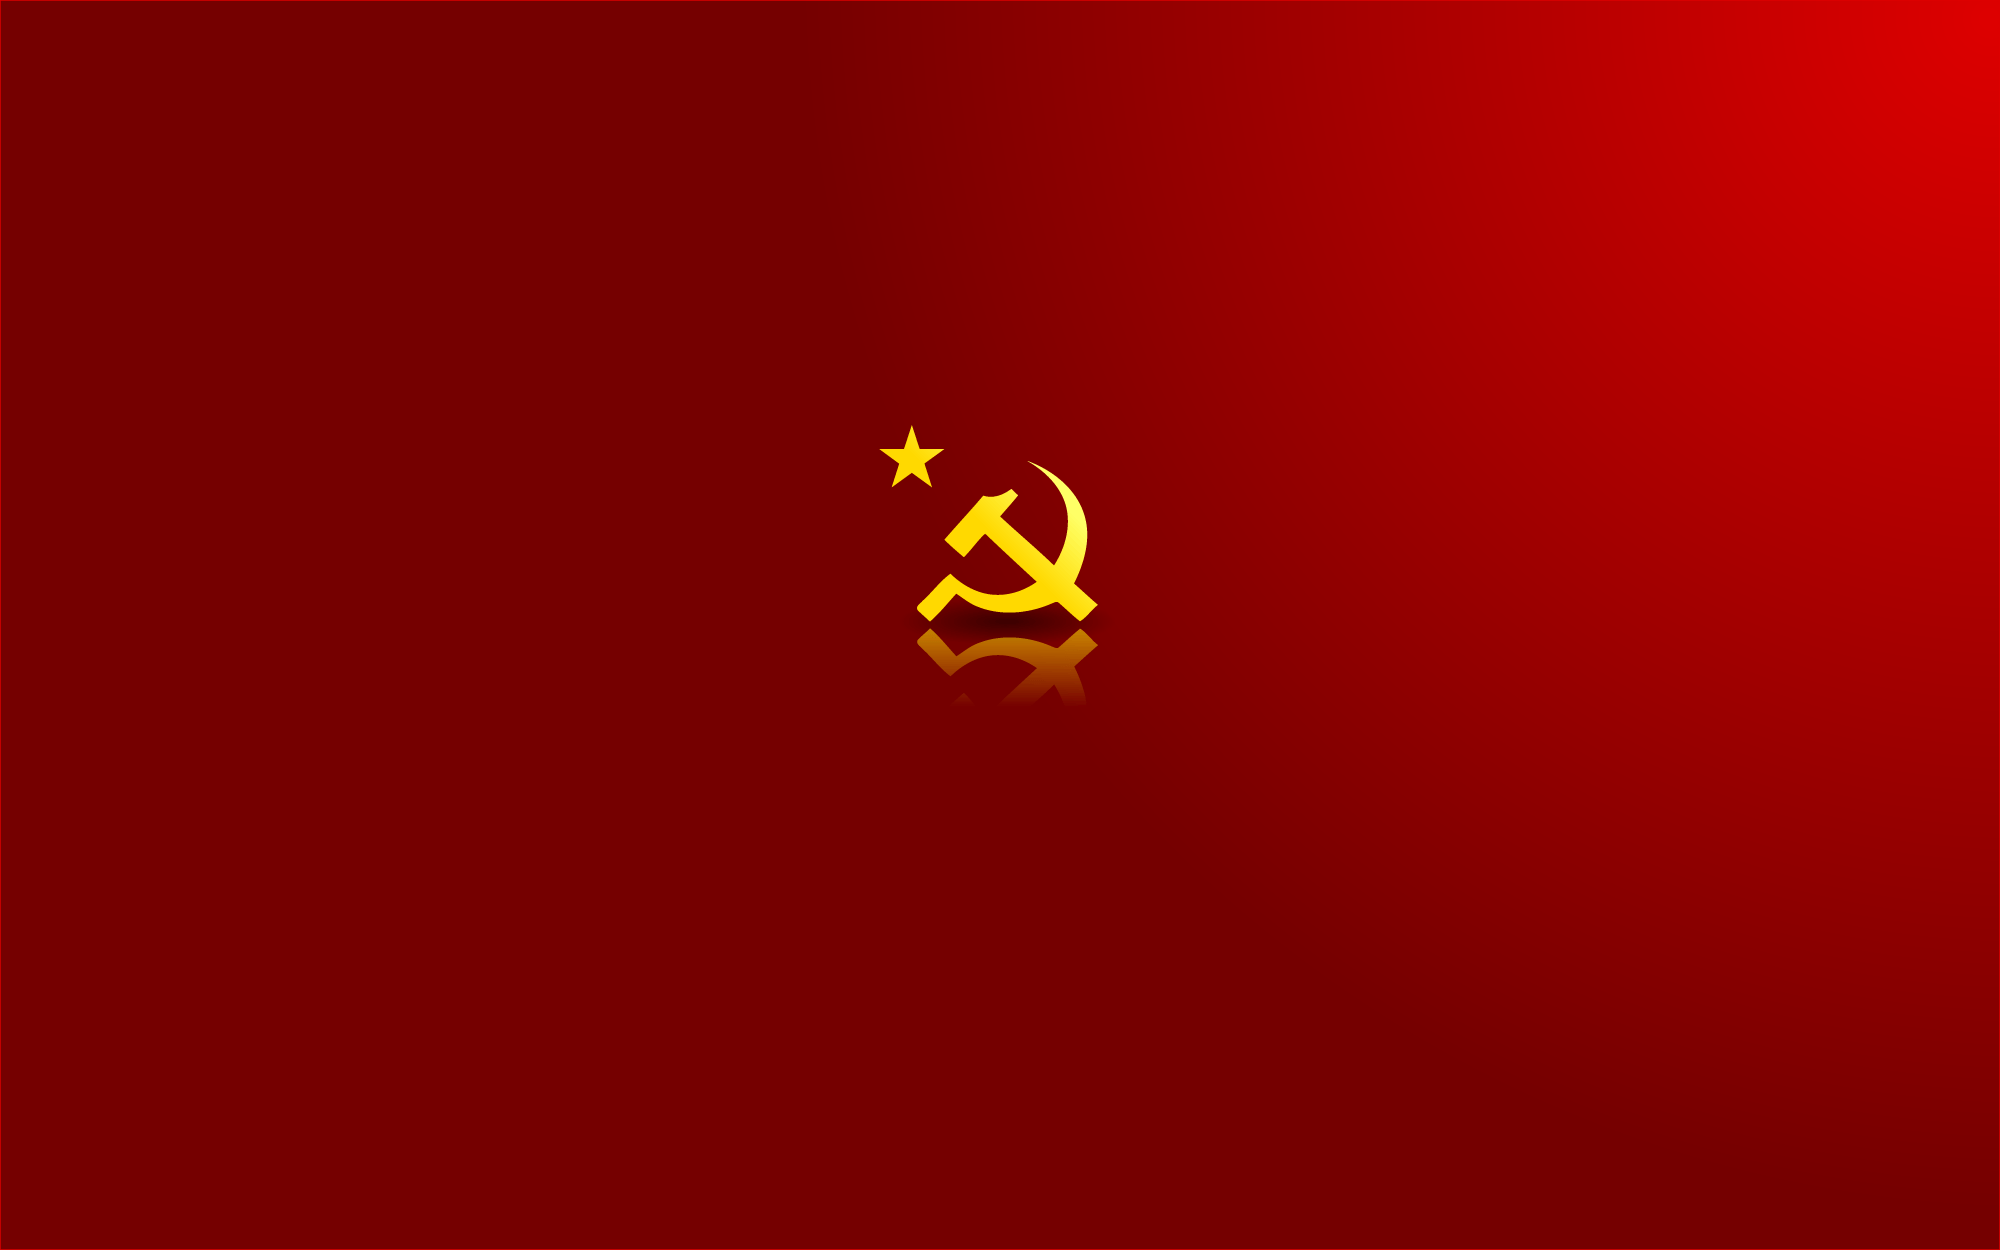 Ftuturistic USSR wallpaper on Behance